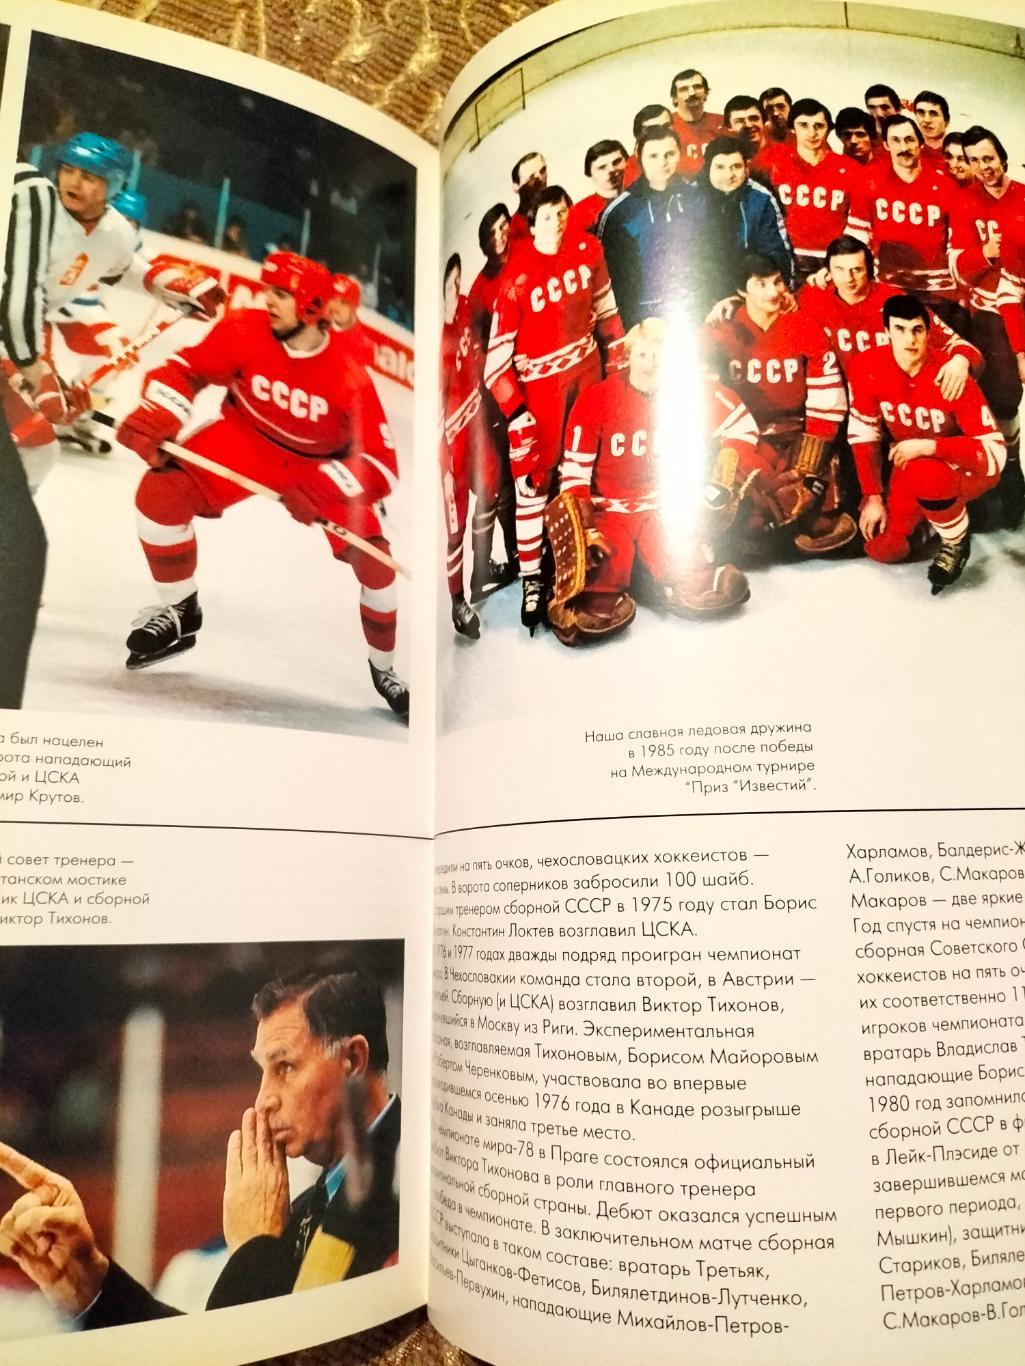 Фотоальбом 50 лет Отечественному хоккею 1946-1996. 6